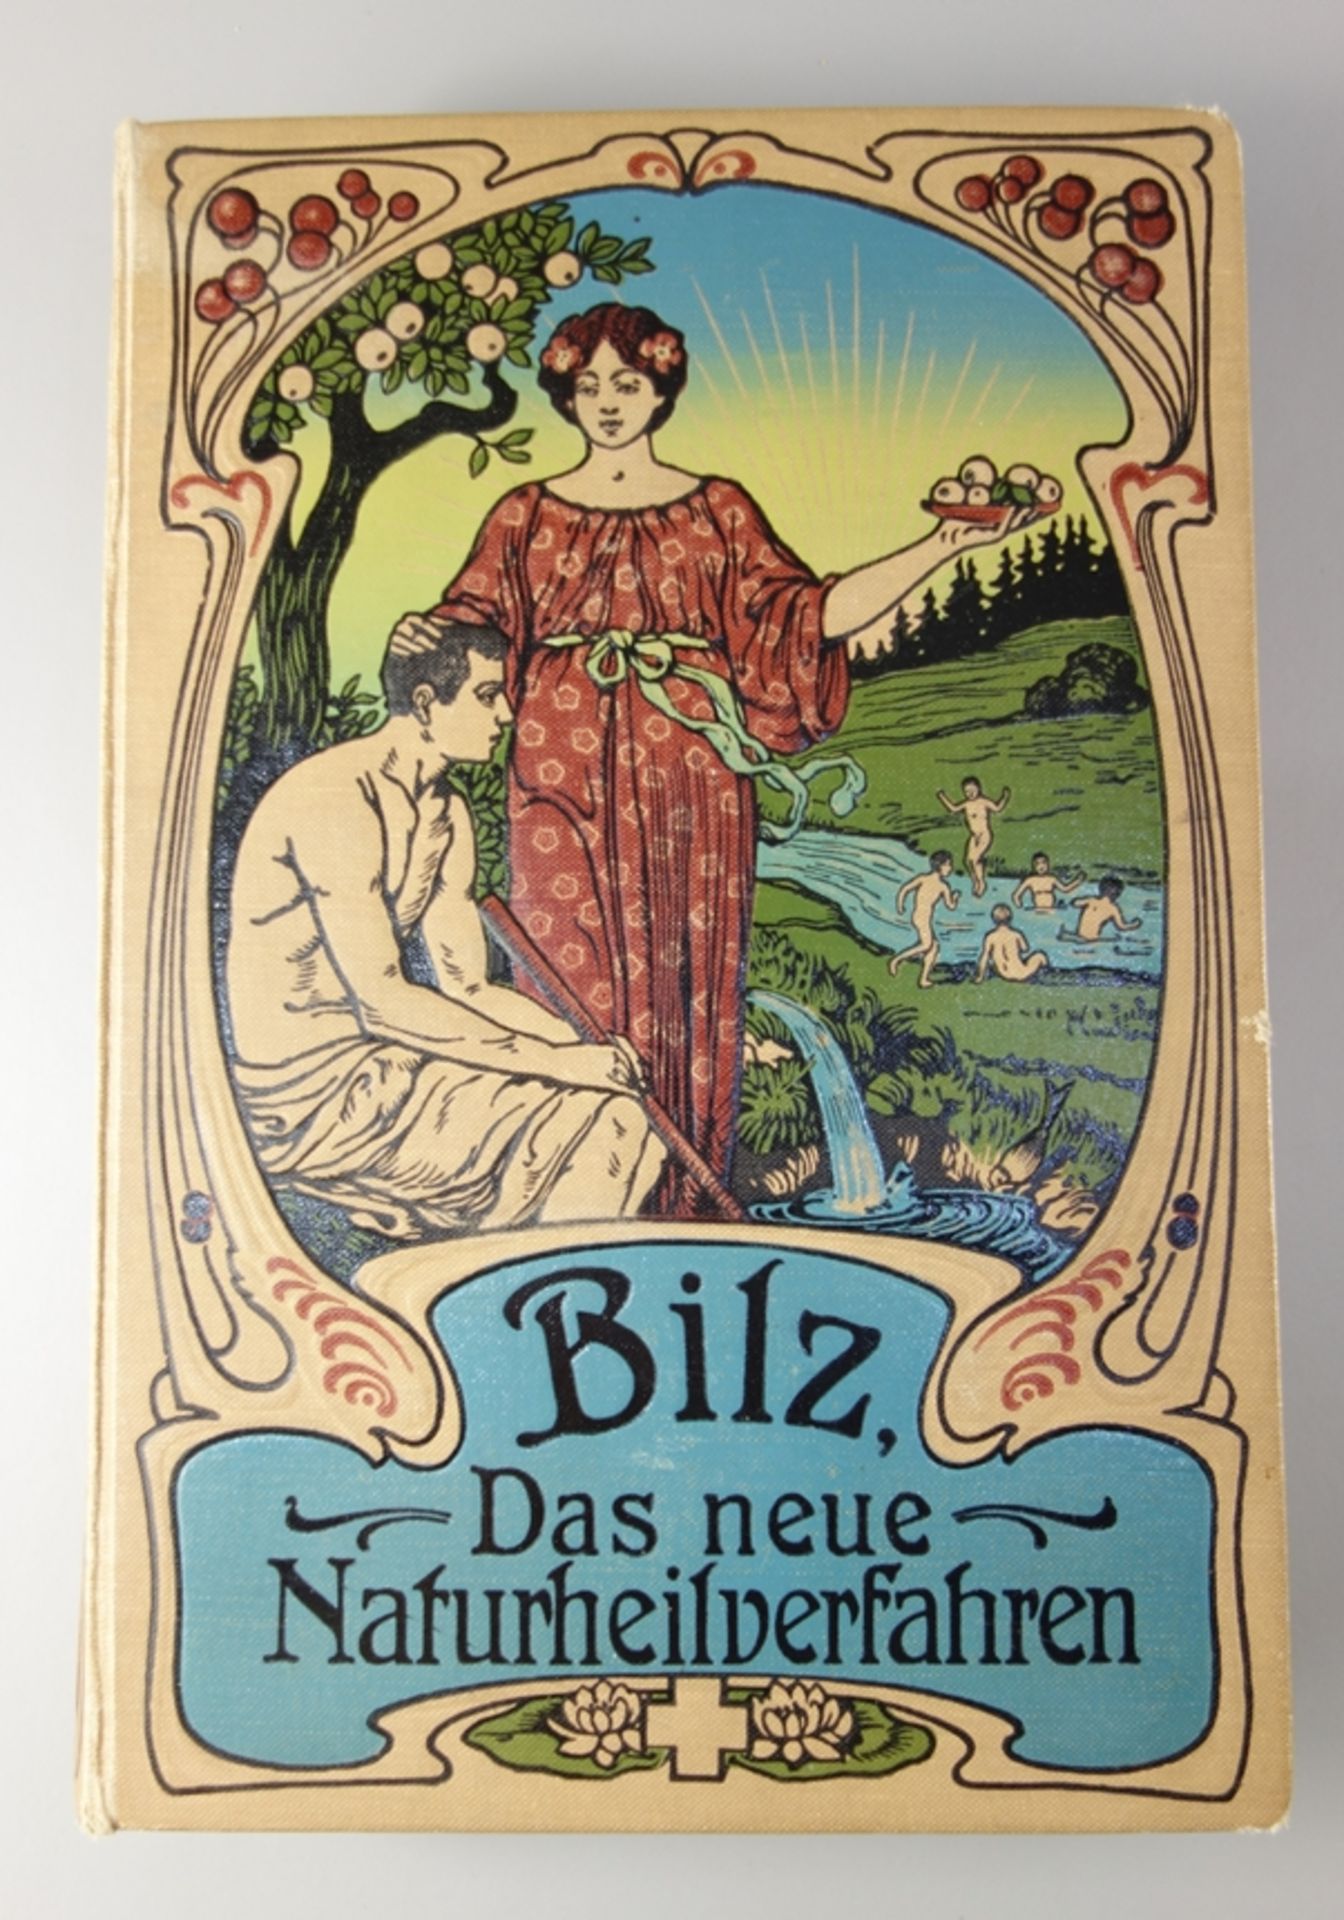 Bilz - Das neue Naturheilverfahren in 2 Bdn. und Supplement-Band, um 1900, "Ein Ratgeber in